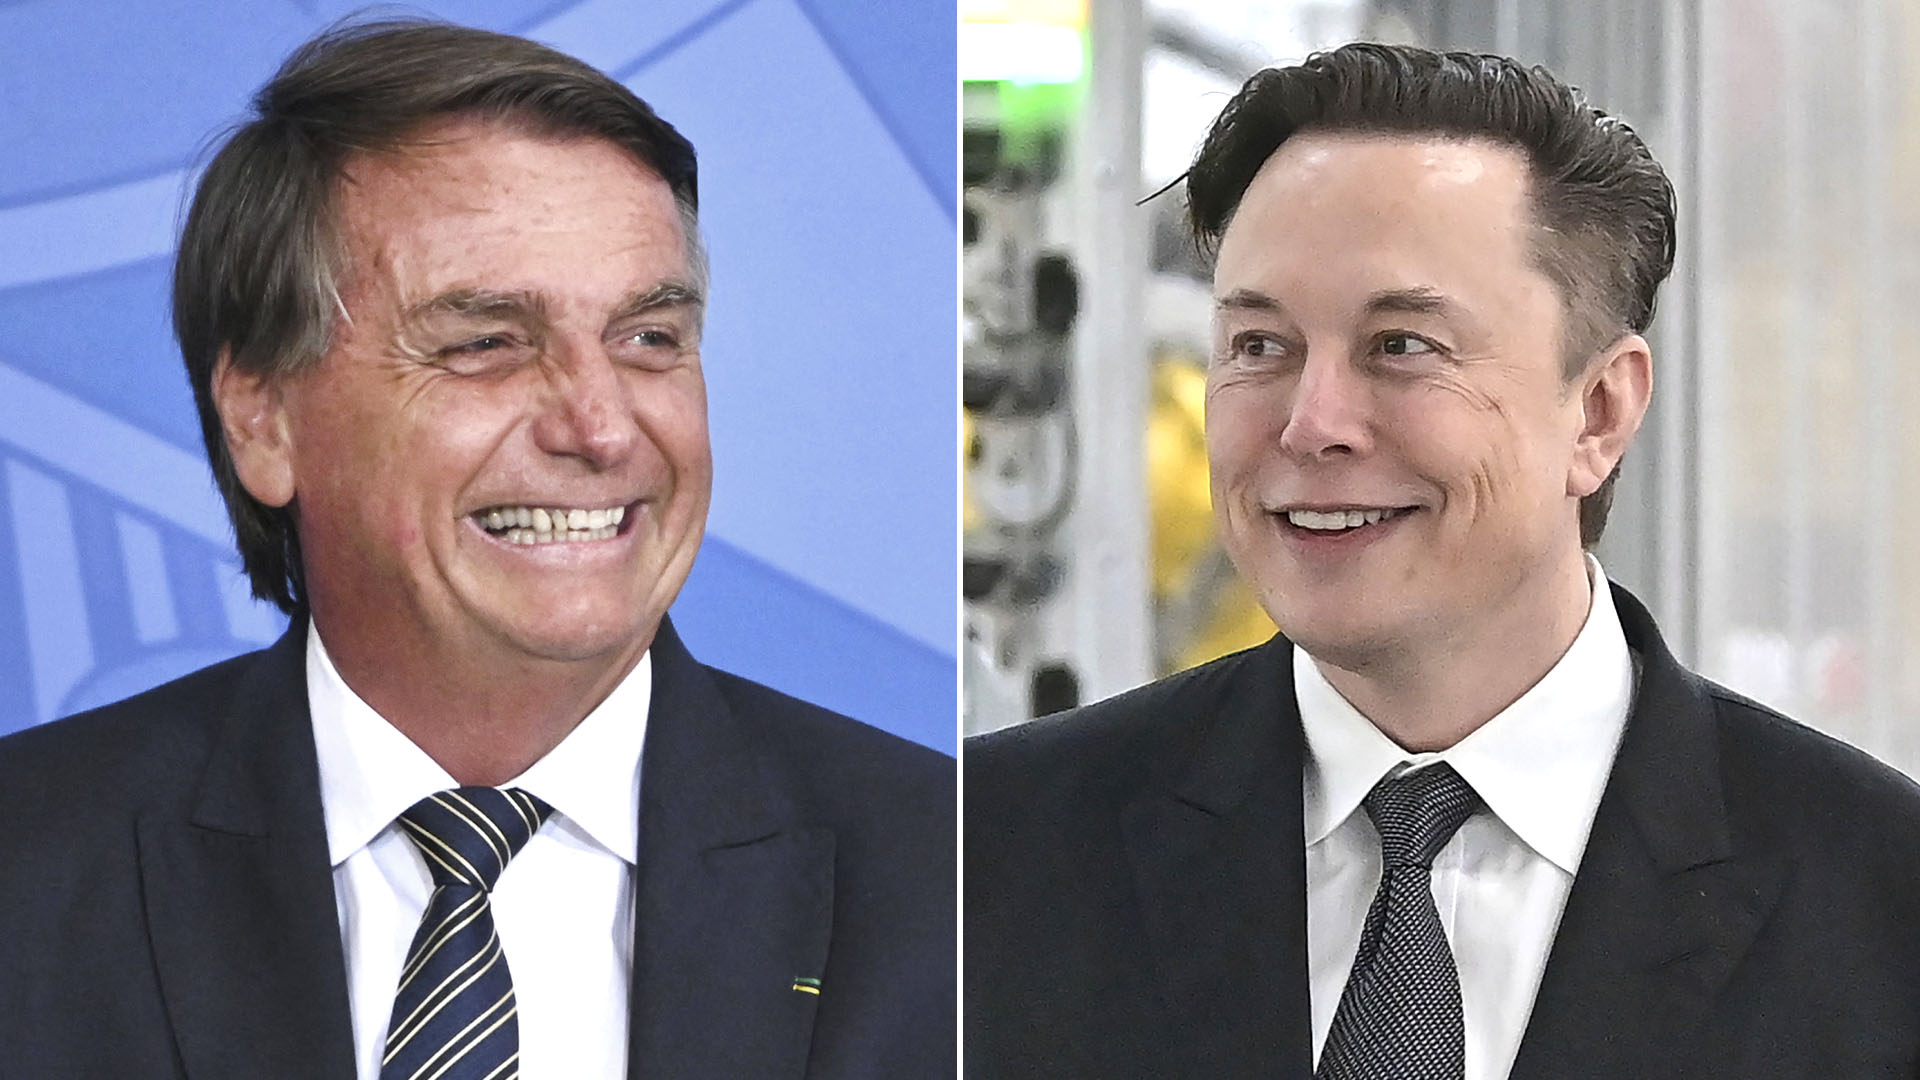 El presidente brasileño Jair Bolsonaro se reunirá con el dueño de SpaceX y Tesla, Elon Musk, en una reunión en San Pablo (Infobae)